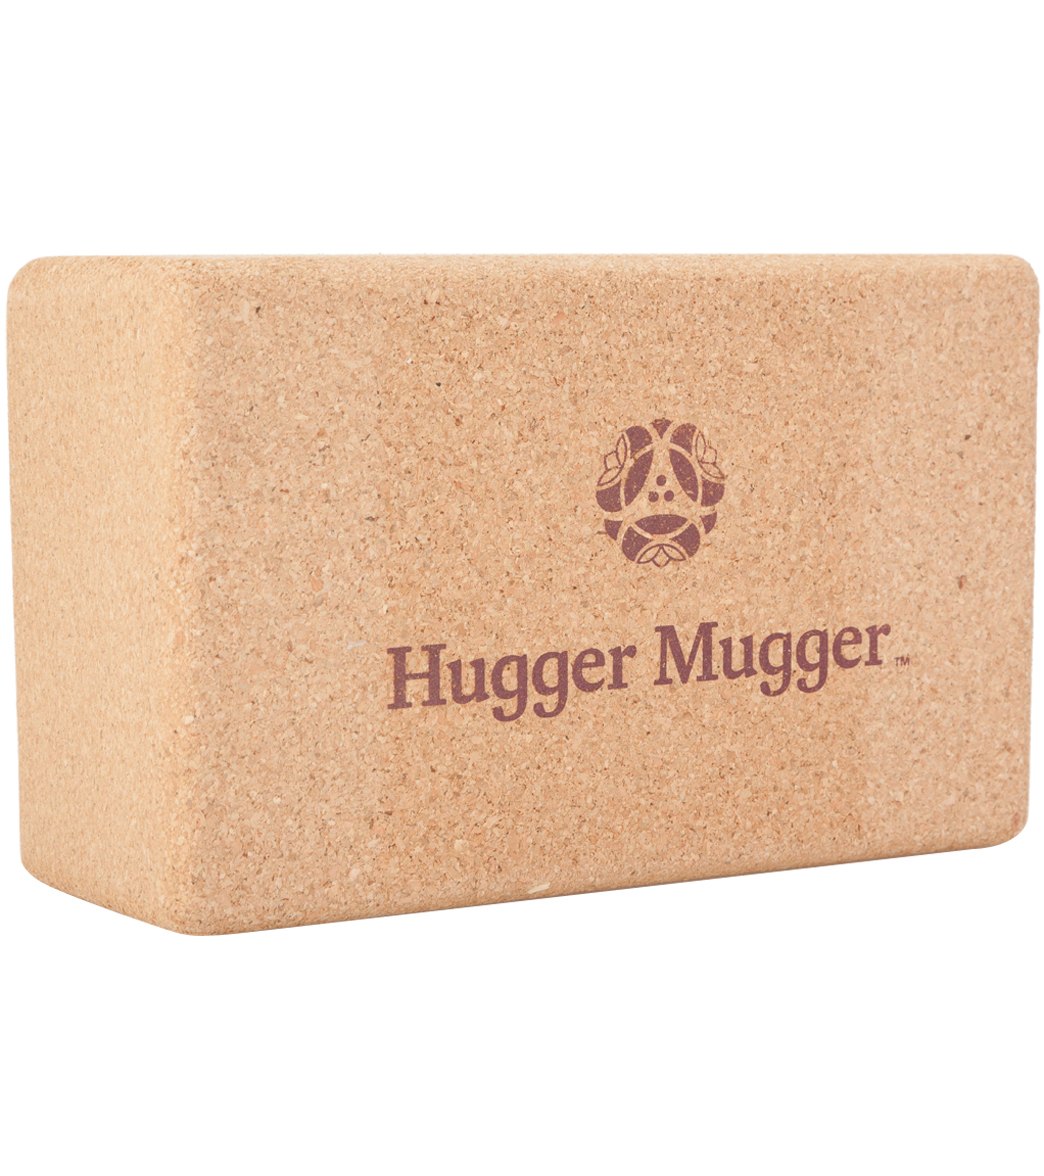  Hugger Mugger 4 in. Foam Yoga Block (Blue) : Sports & Outdoors